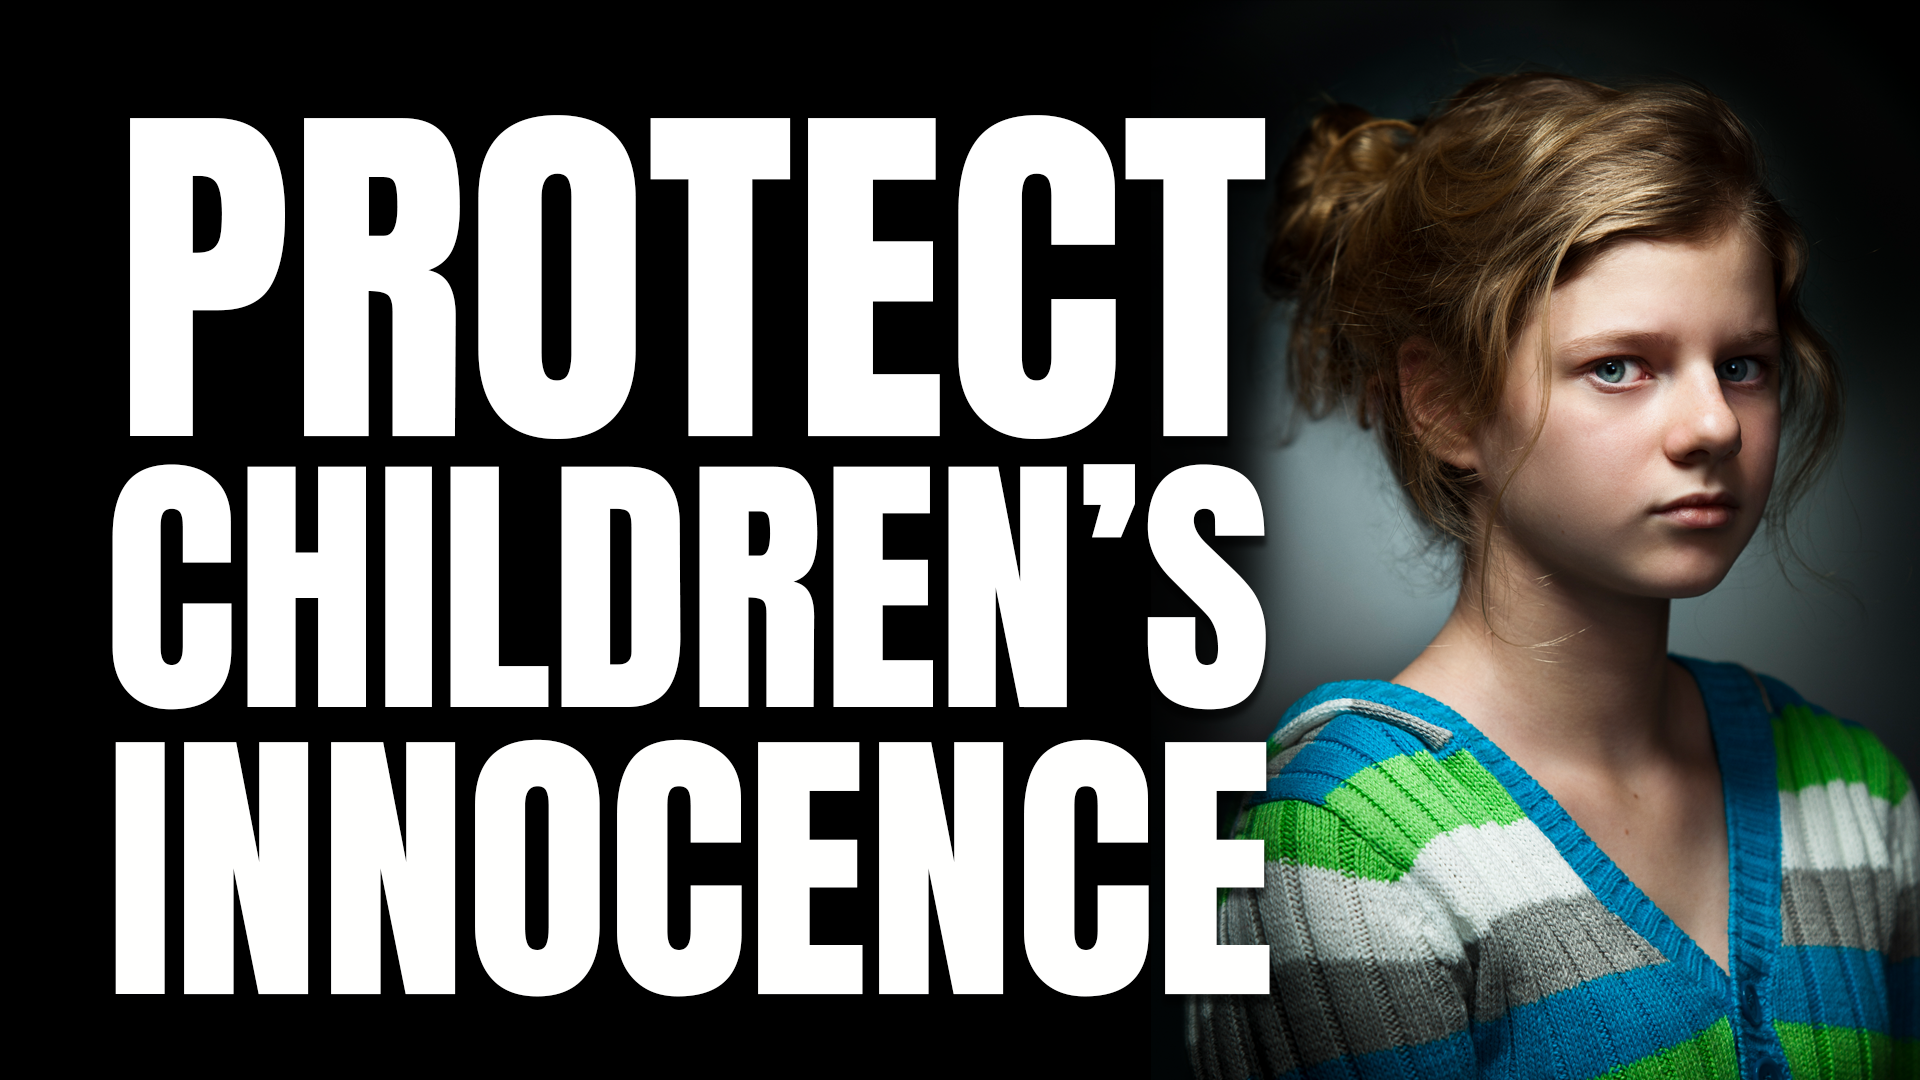 Preserve Children-s Innocence WebGrid-2